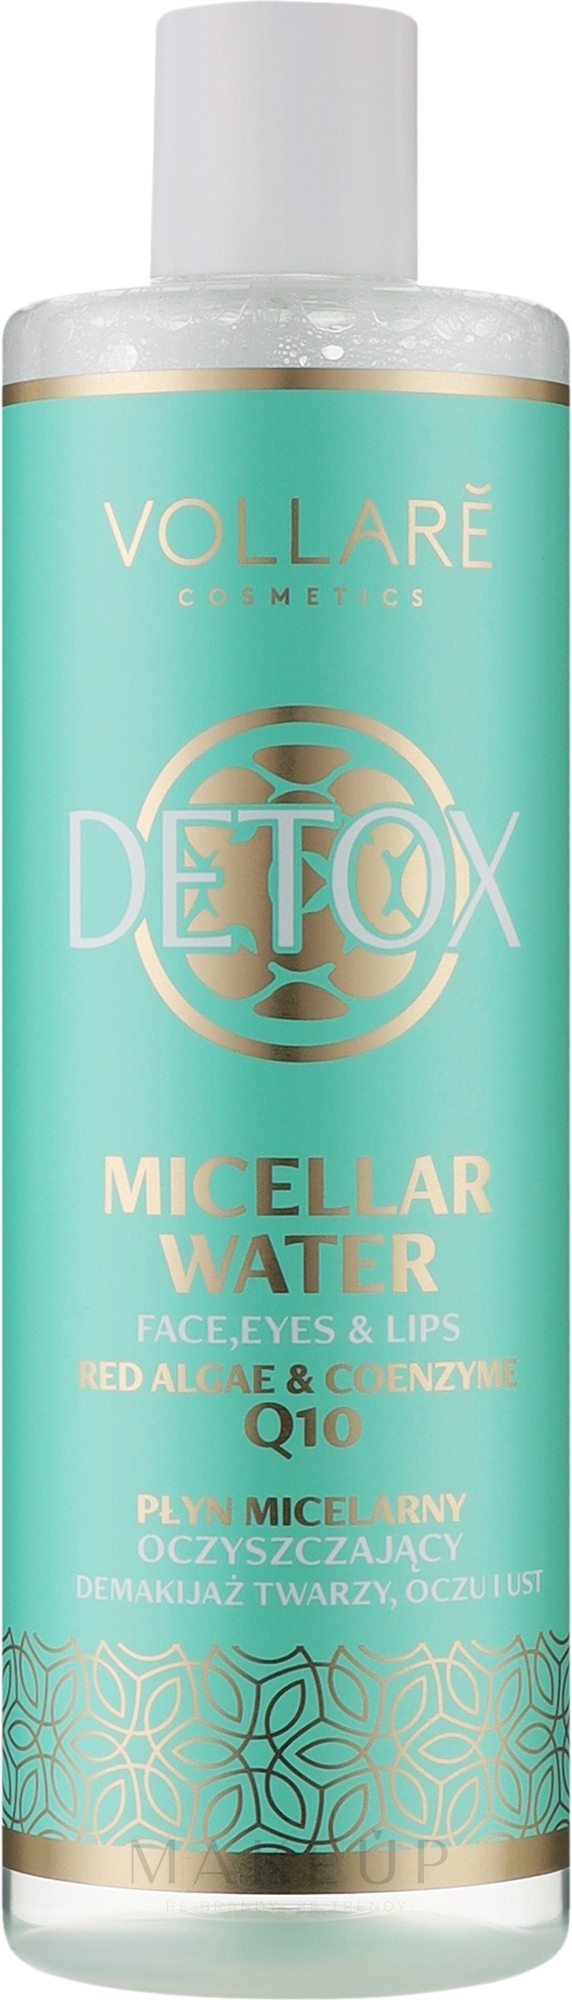 Mizellenwasser - Vollare Detox Micellar Water Face & Eyes — Bild 400 ml